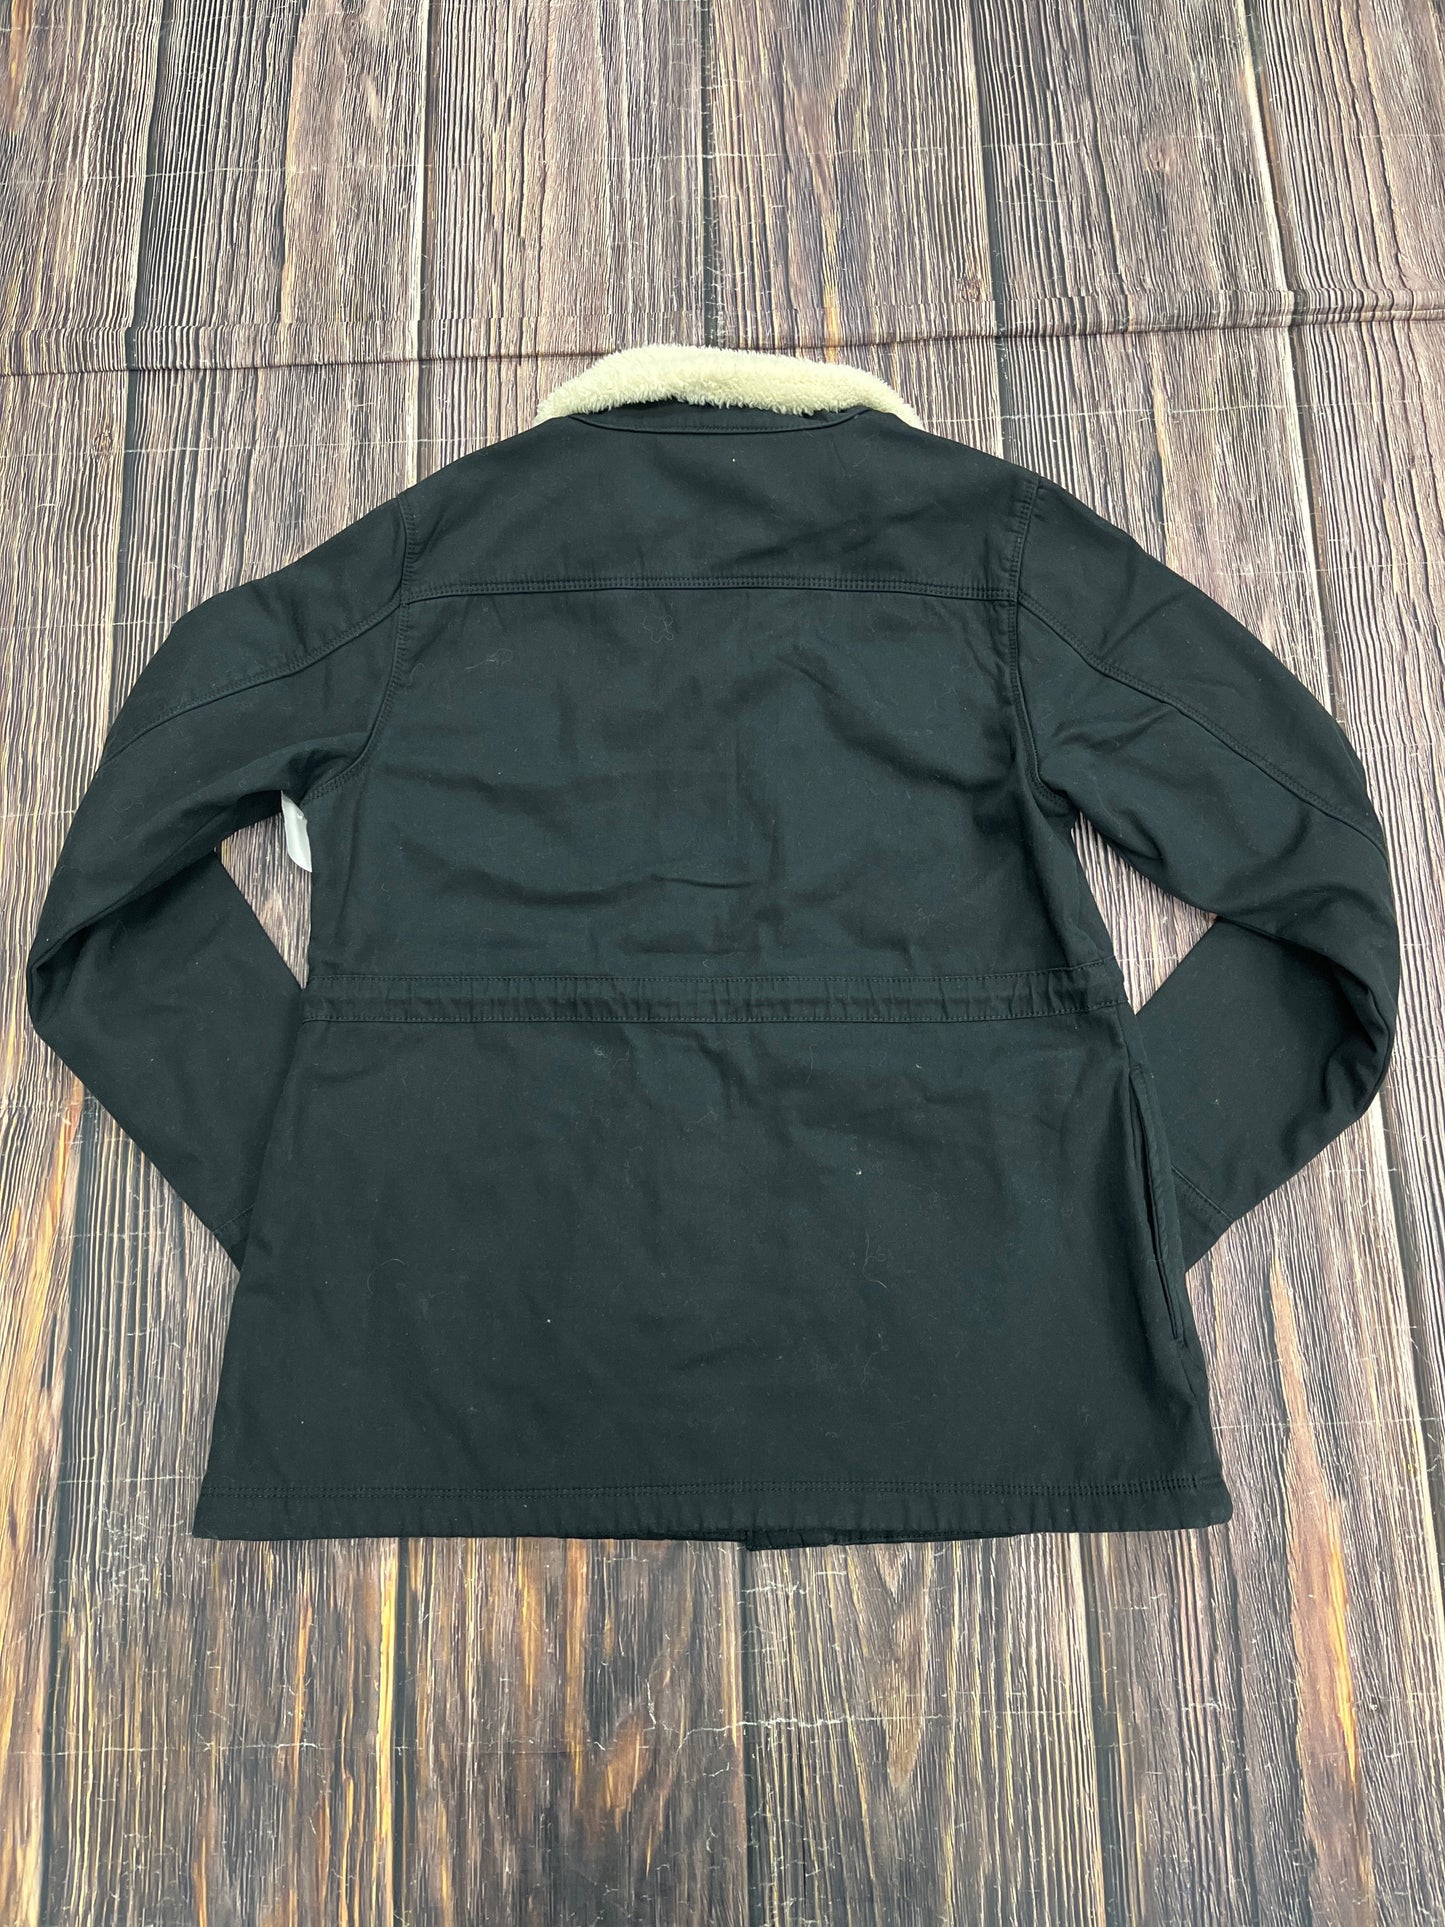 Jacket Utility By Hang Ten  Size: M